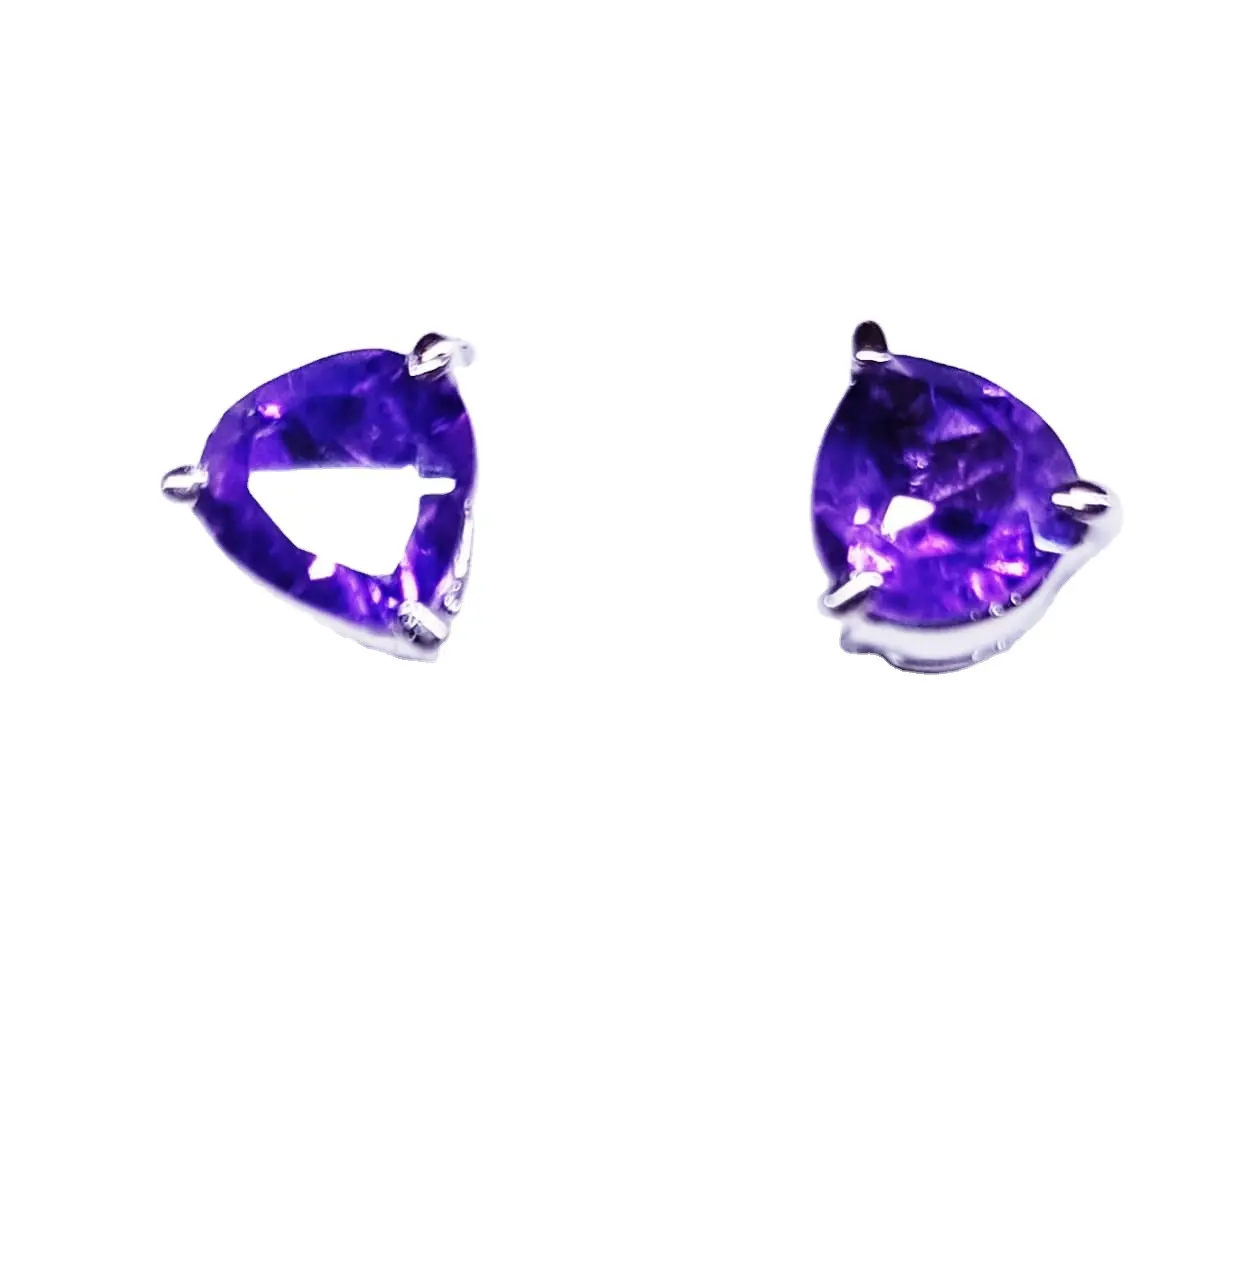 Großhandel Fancy Design Hochzeits schmuck Vergoldete Kristall Ohrring Creolen S925 Silber edlen Schmuck Ohrringe neue Marke